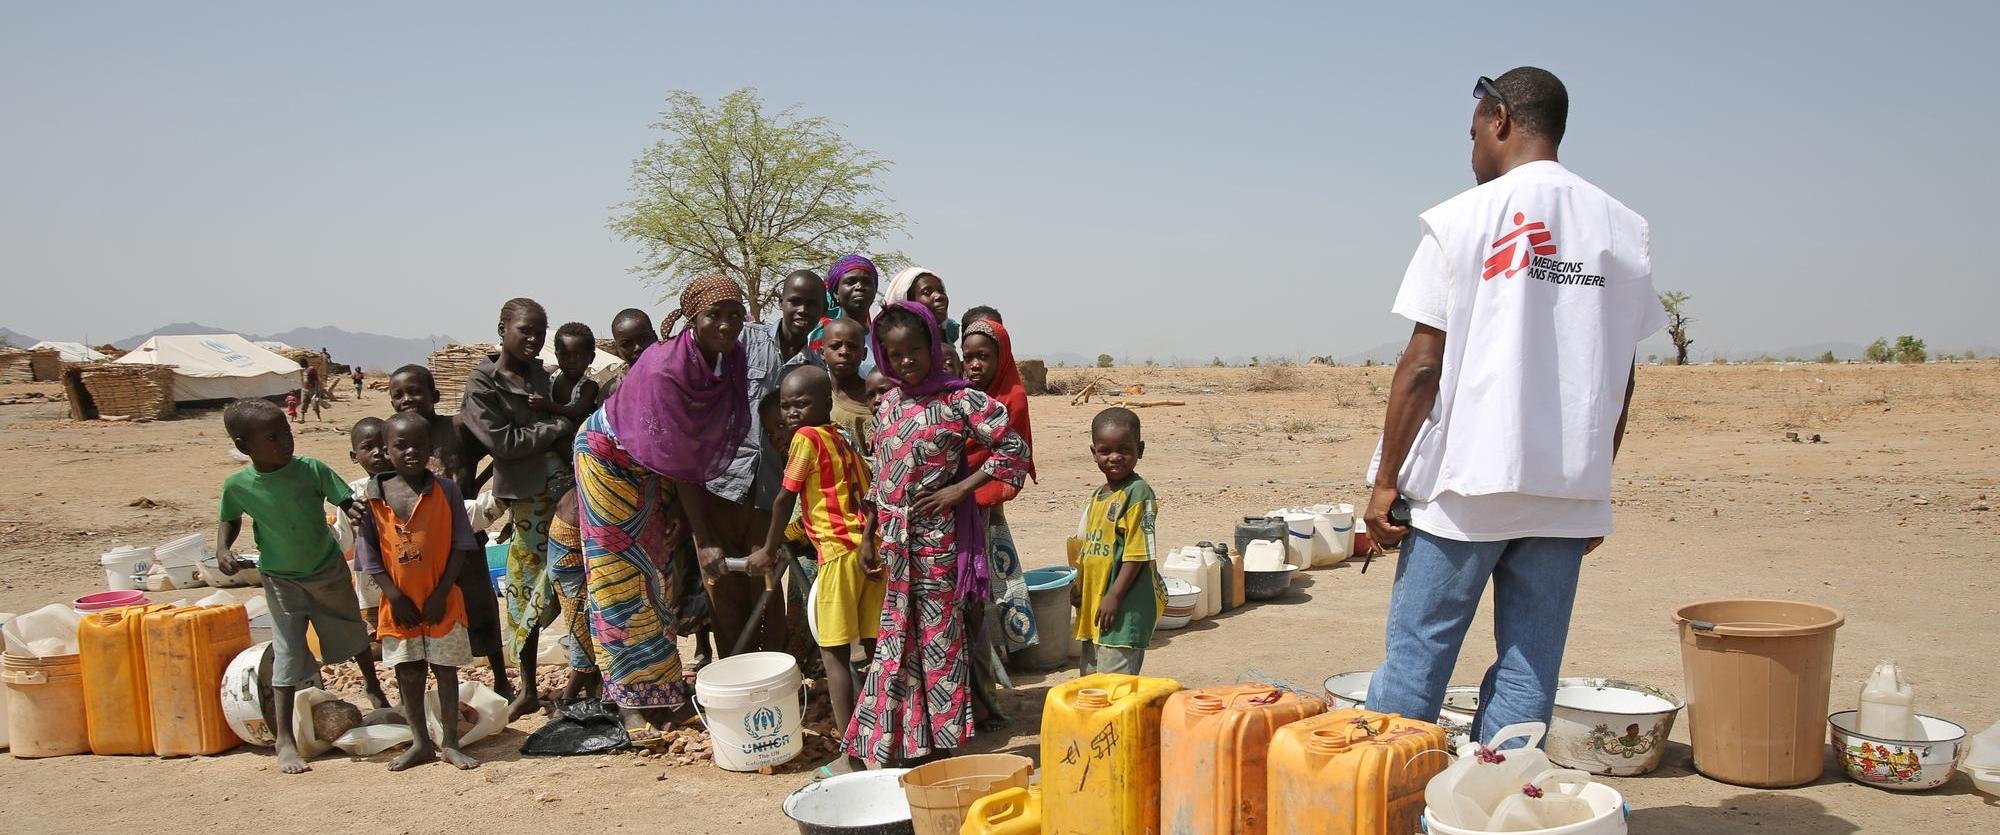 Distribution d'eau par les équipes MSF dans le camp de Minawao / Gawar, au Cameroun. Mai 2015 